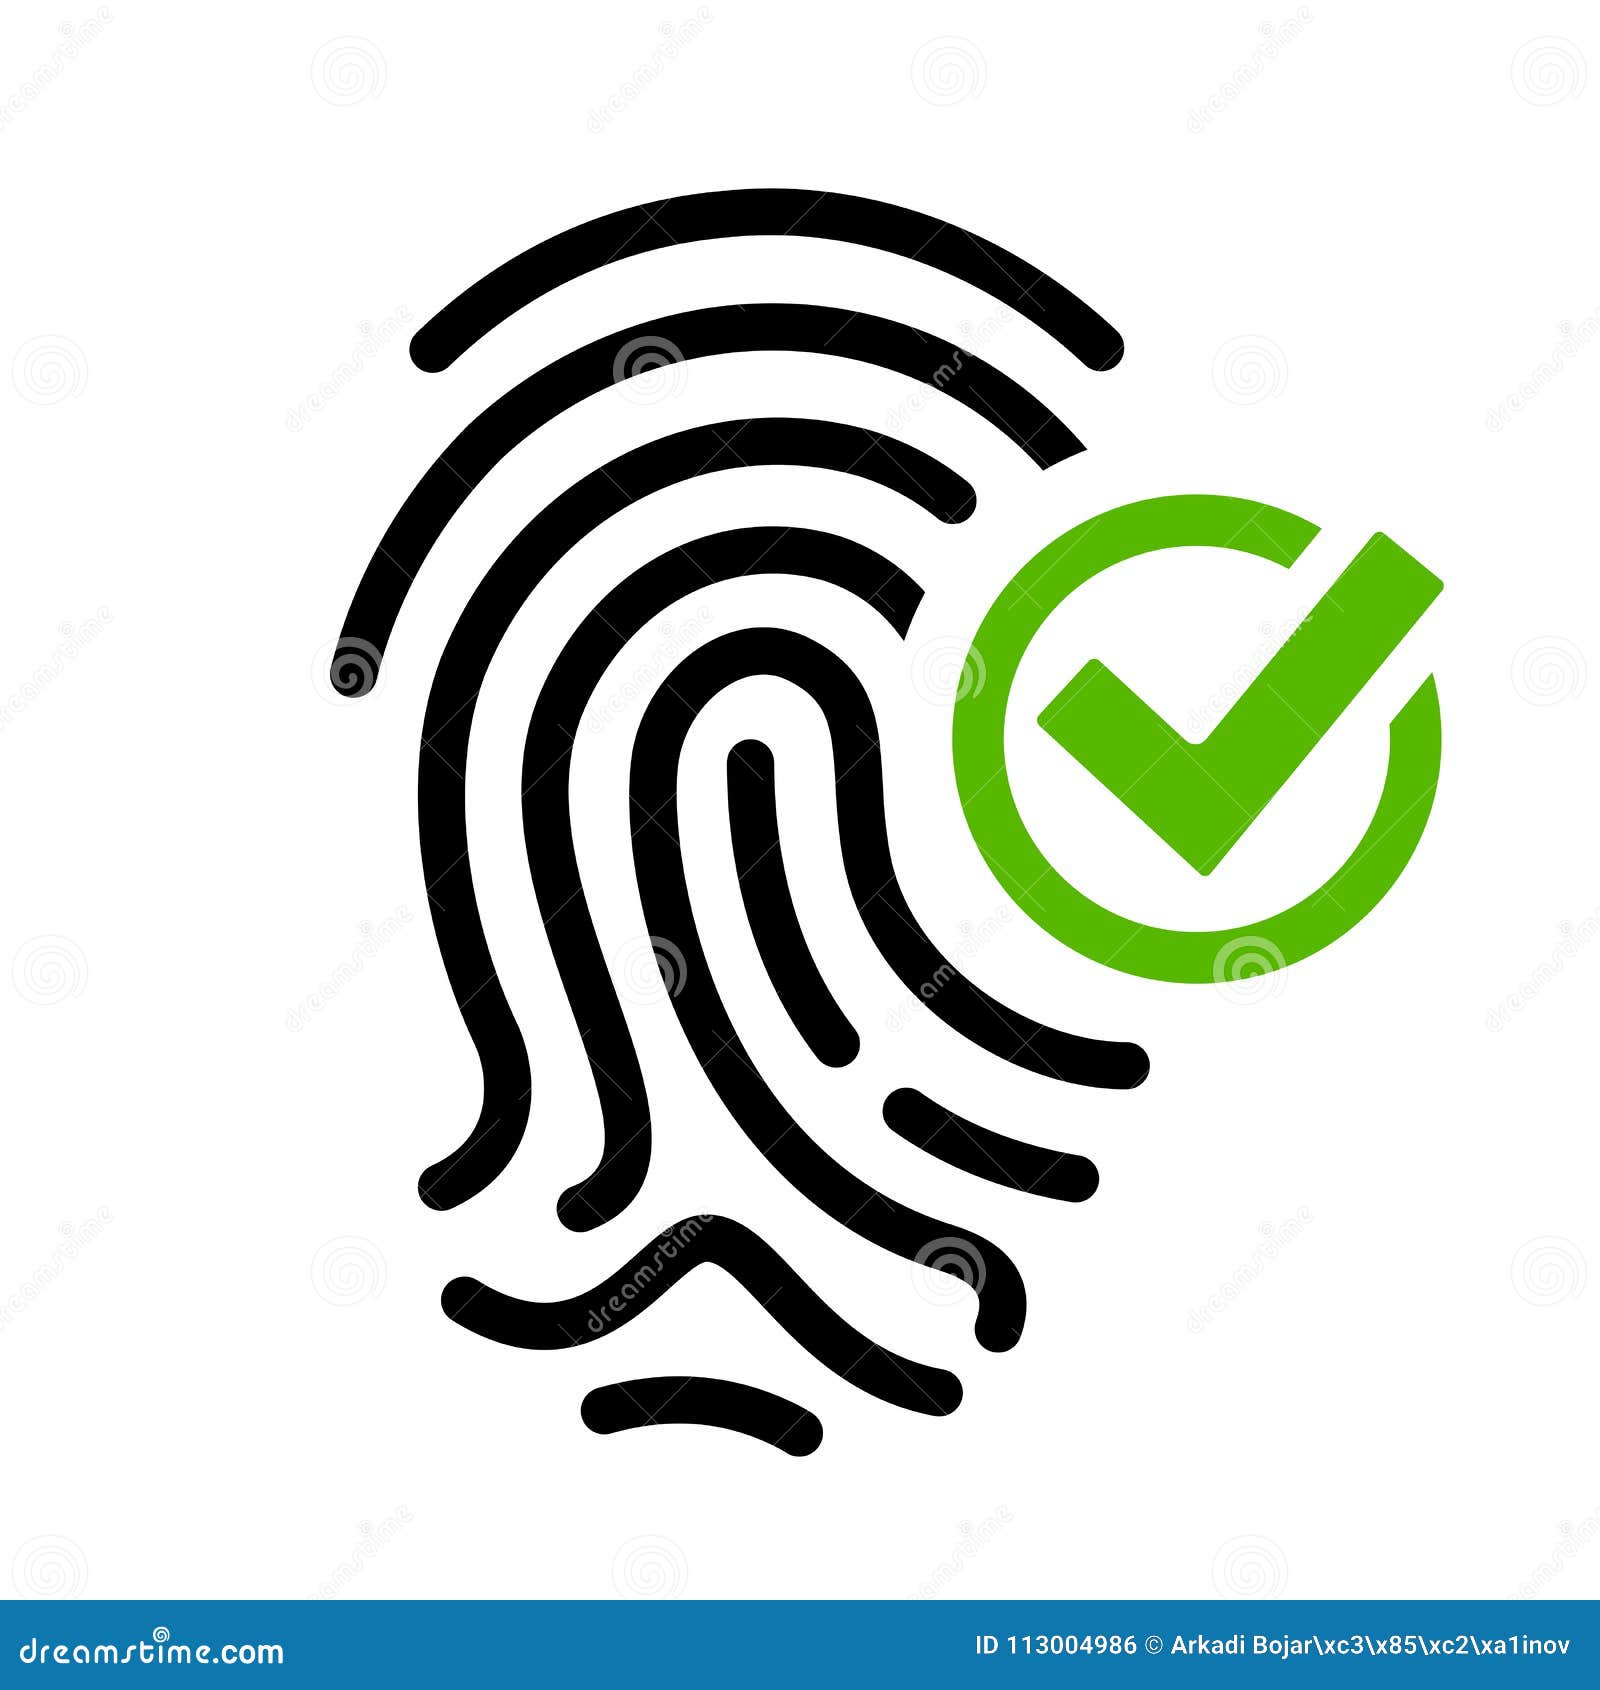 biometric access granted  icon